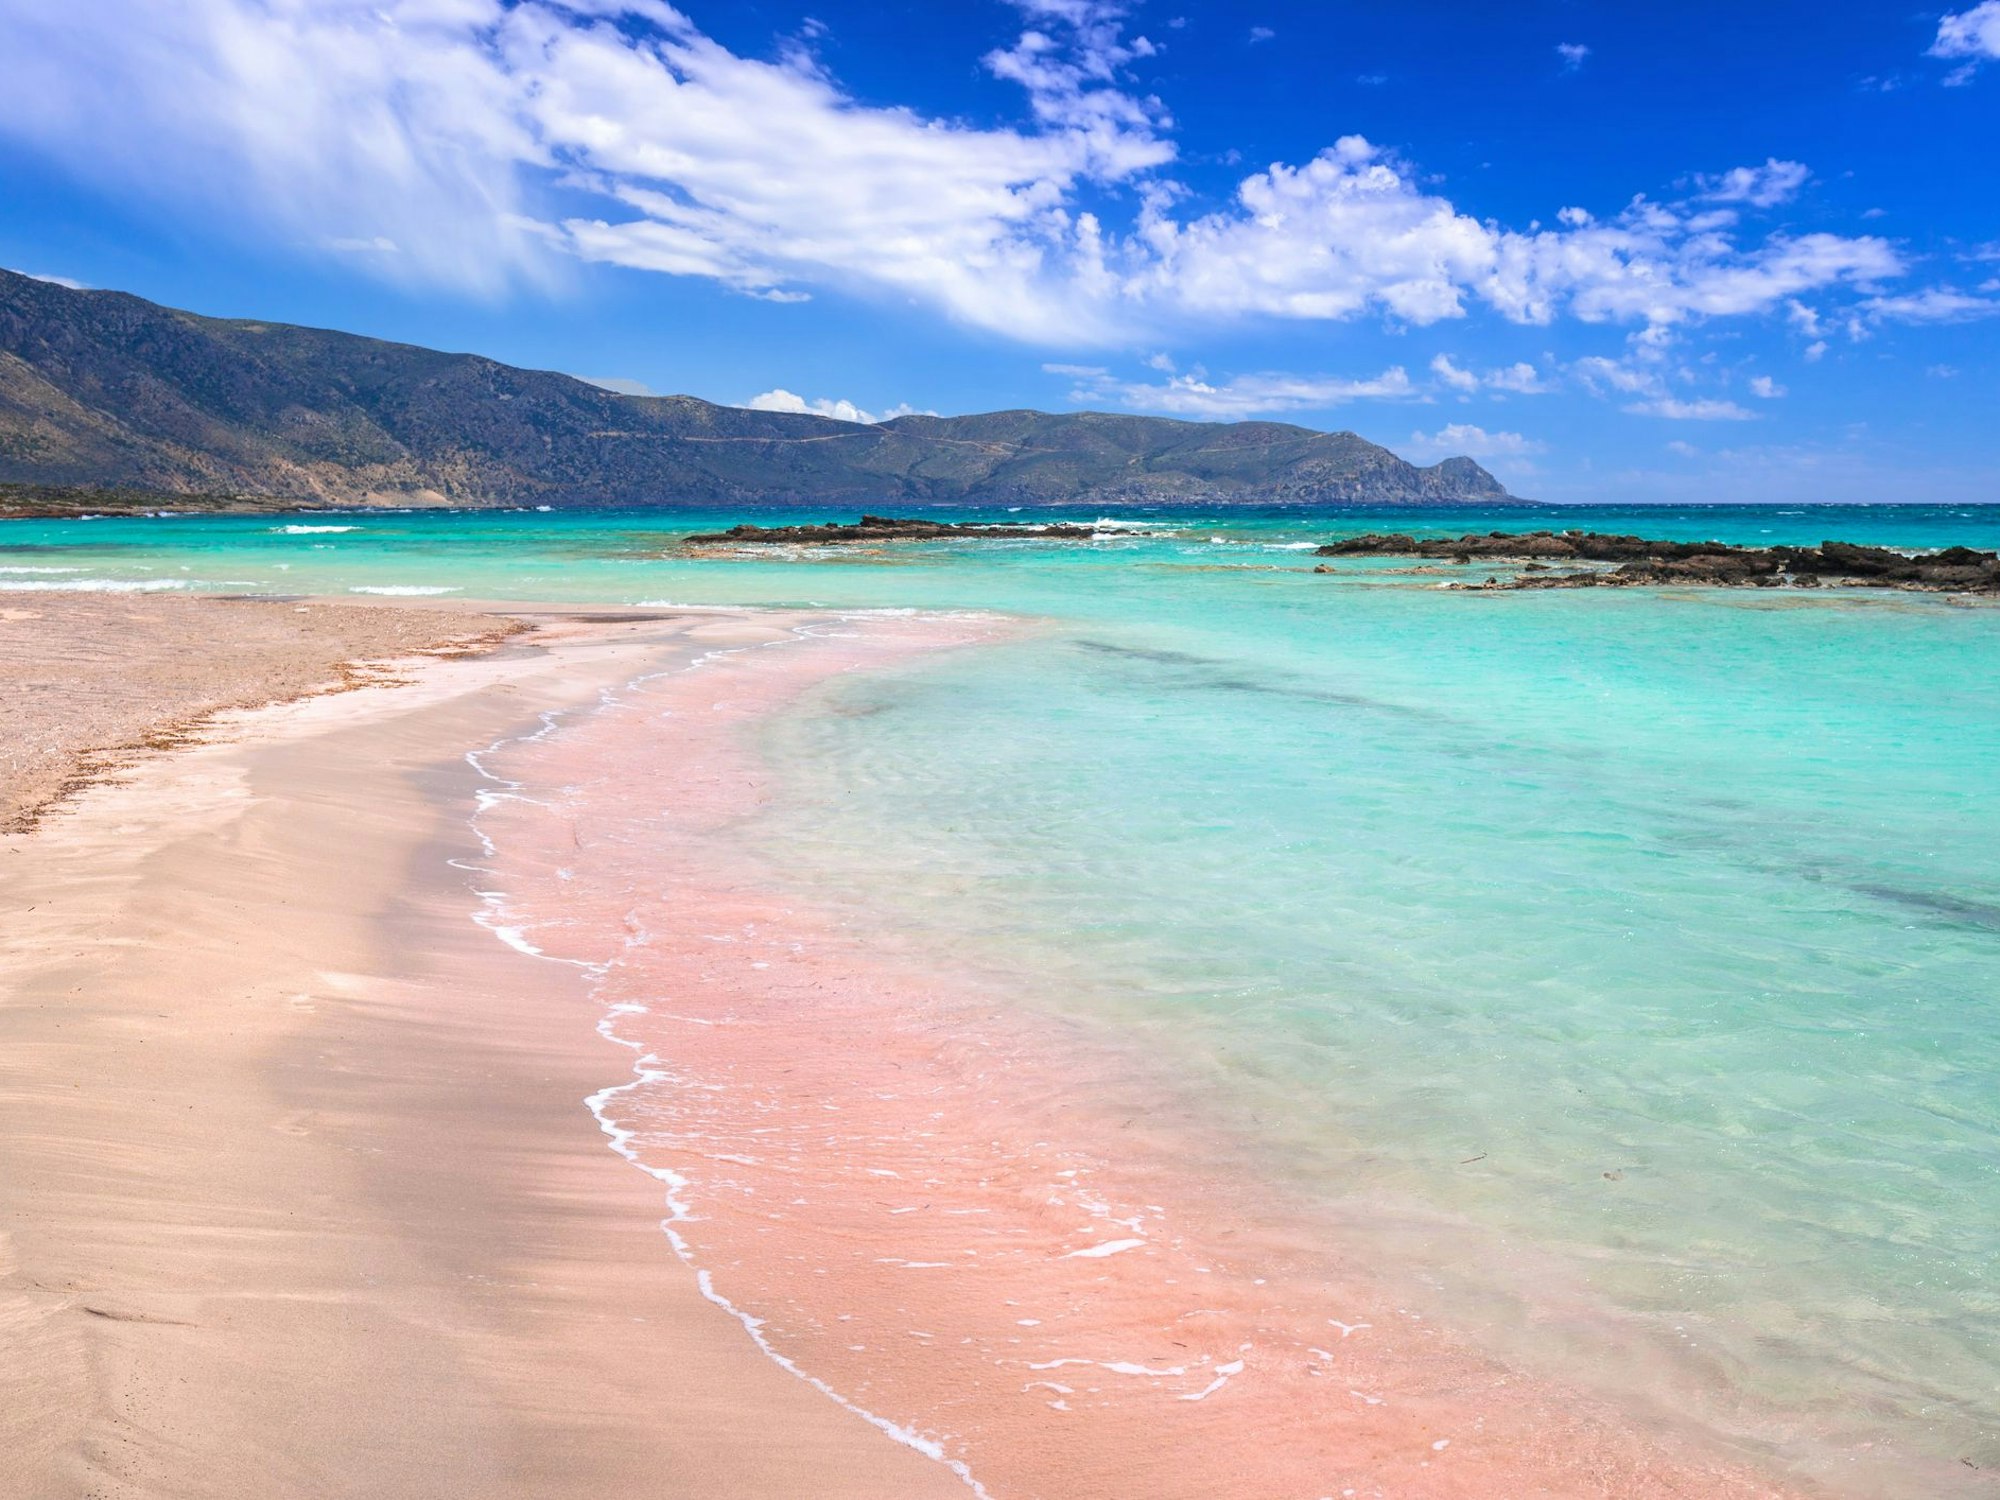 Griechische Inseln: Urlaub auf Kreta verzaubert mit dem pinken Elafonissi beach.